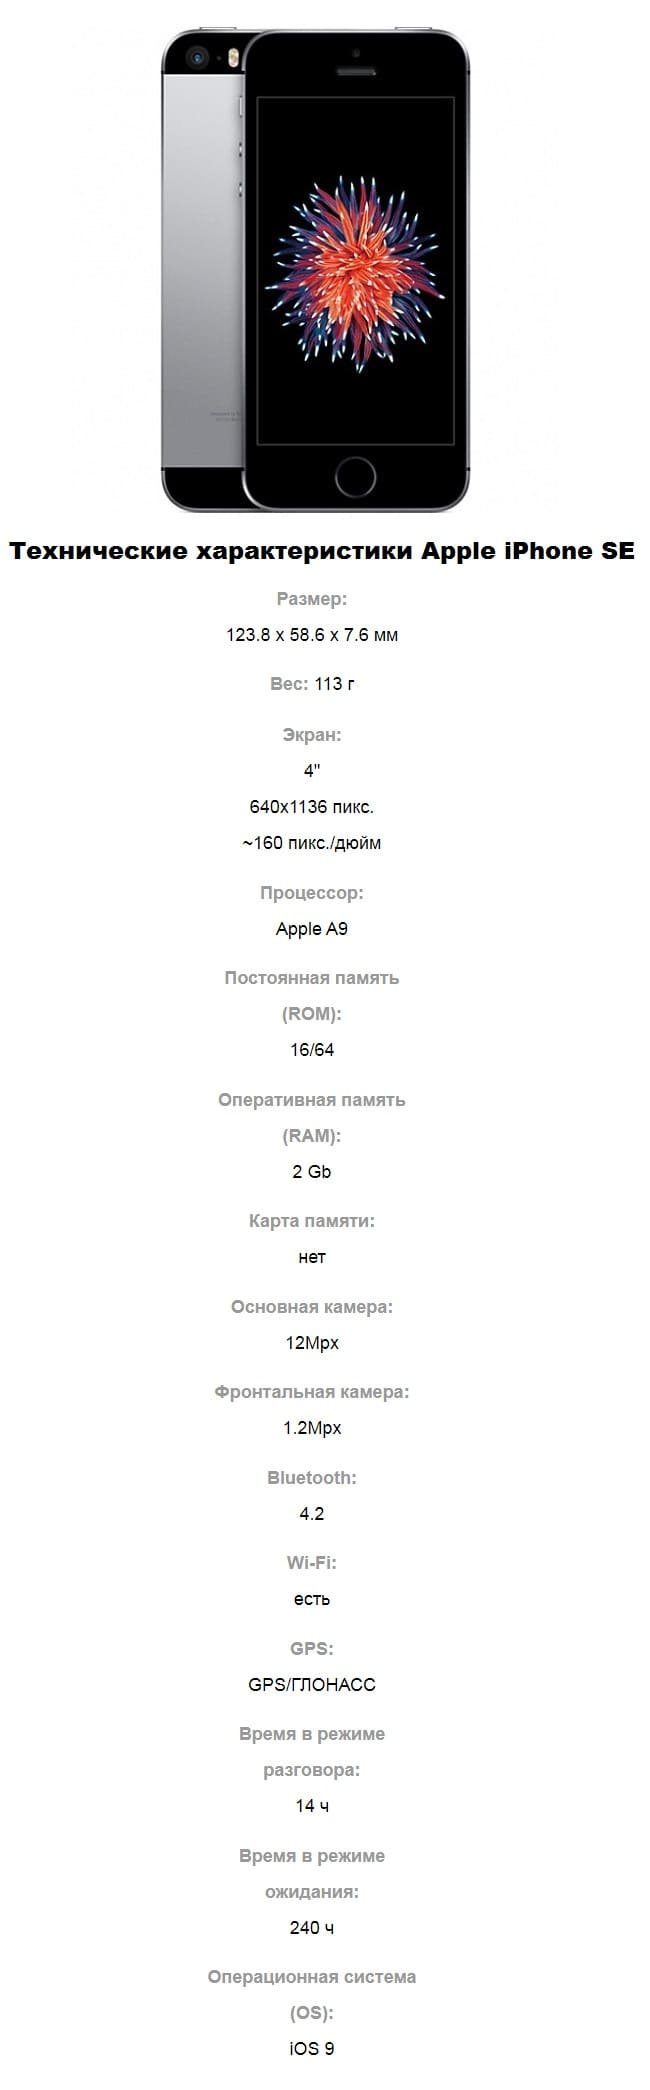 Технические характеристики смартфона Apple iPhone SE